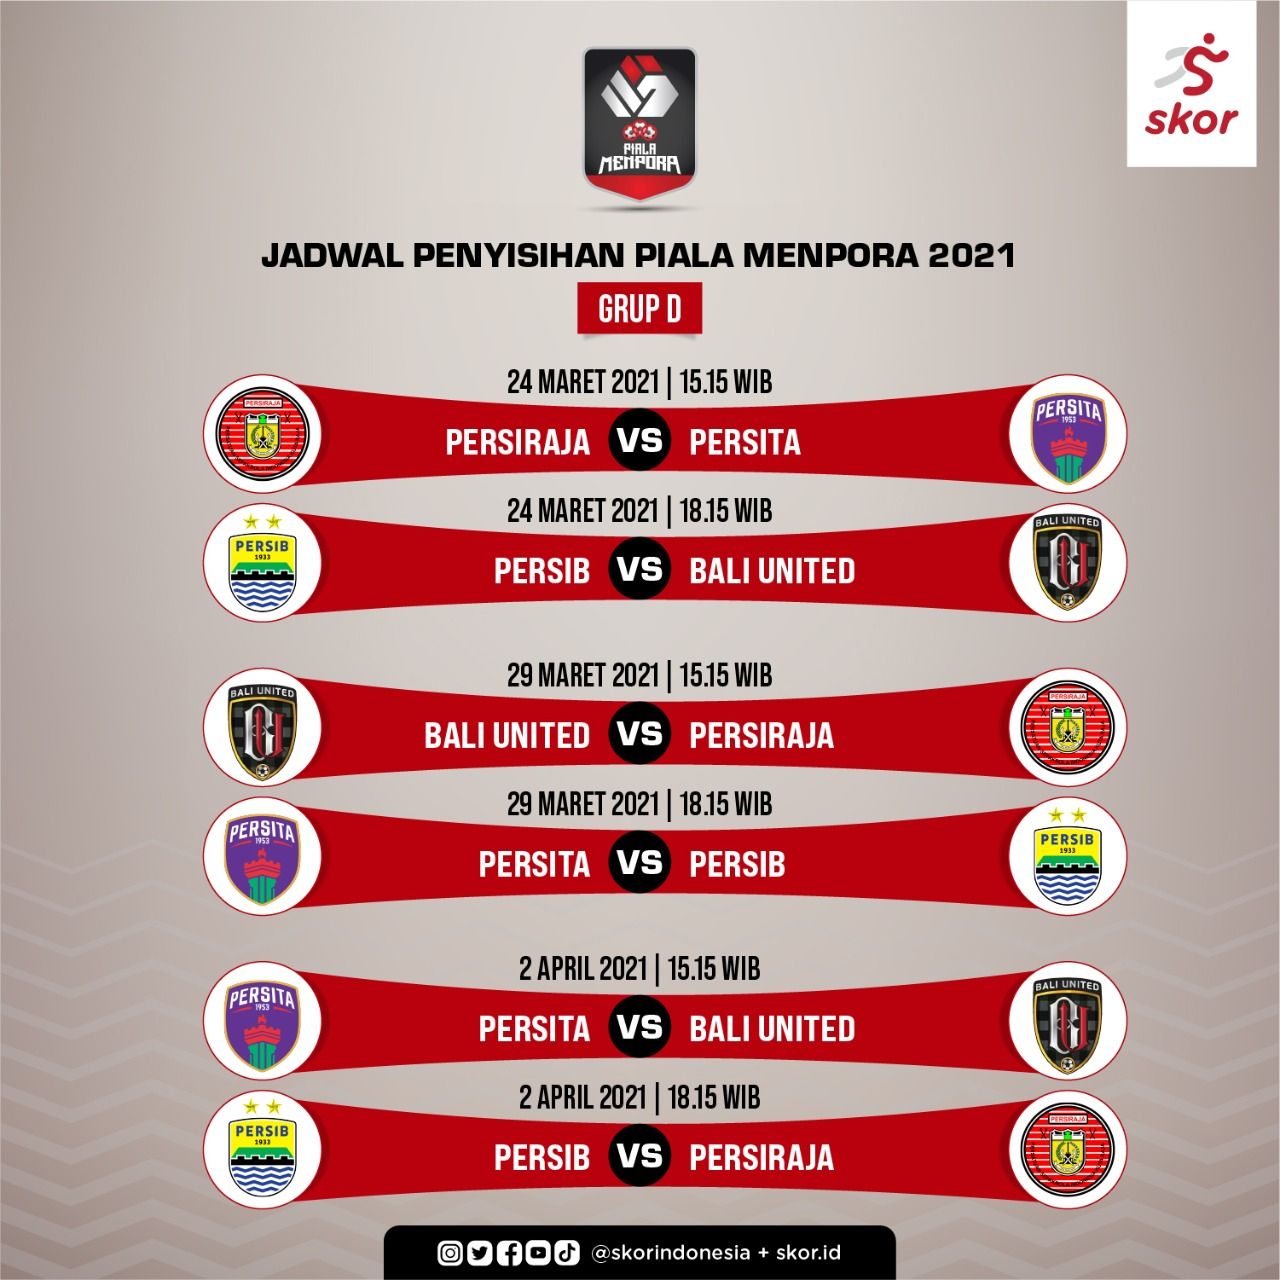 Prediksi Dan Jadwal Grup D Piala Menpora 2021 Bali United Serta Persib Terdepan